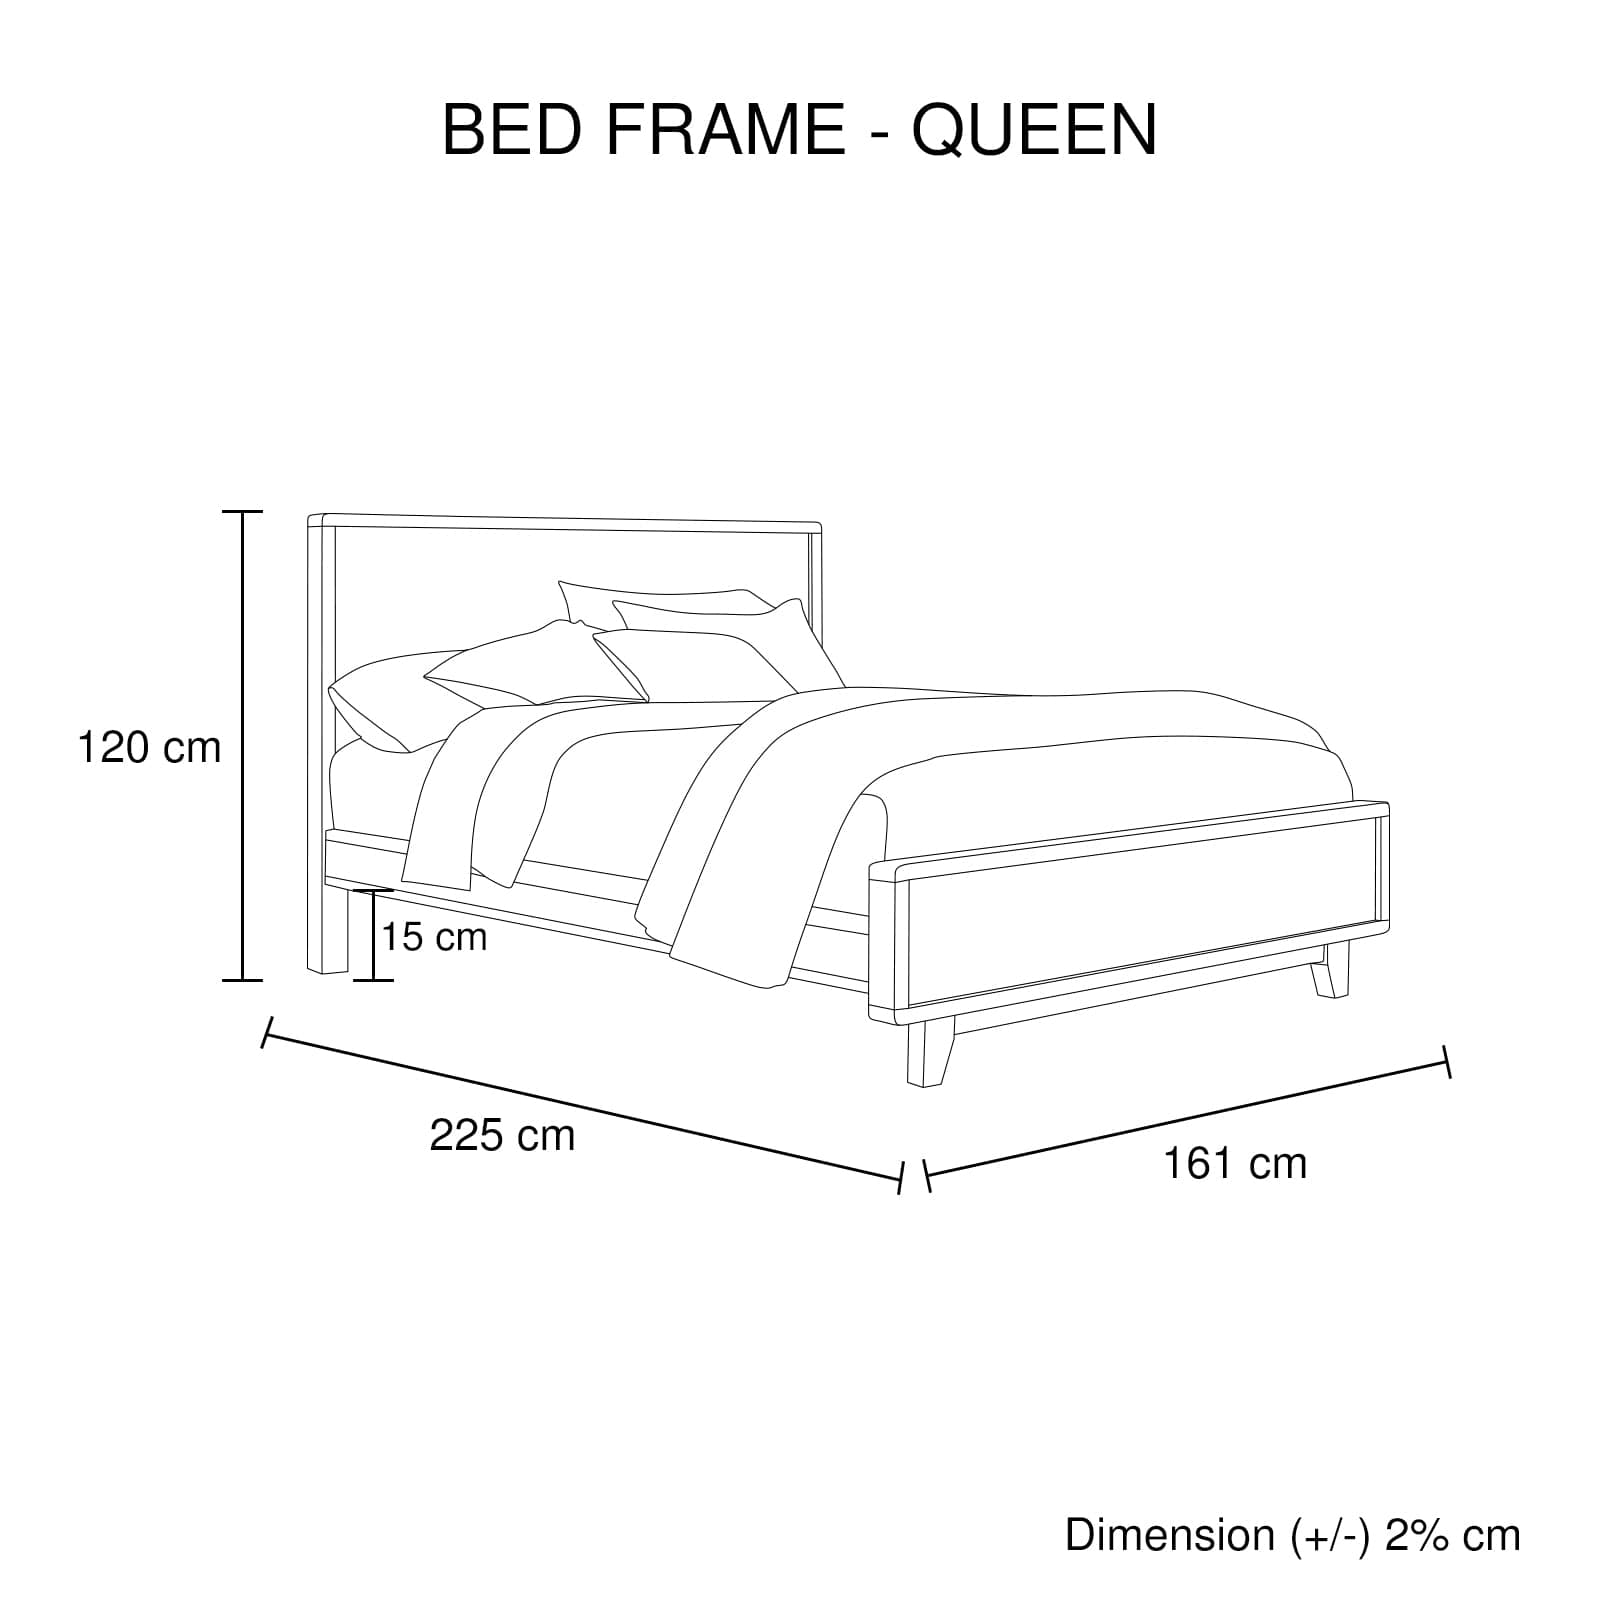 4 Pieces Bedroom Suite Queen Size in Solid Wood Antique Design Light Brown